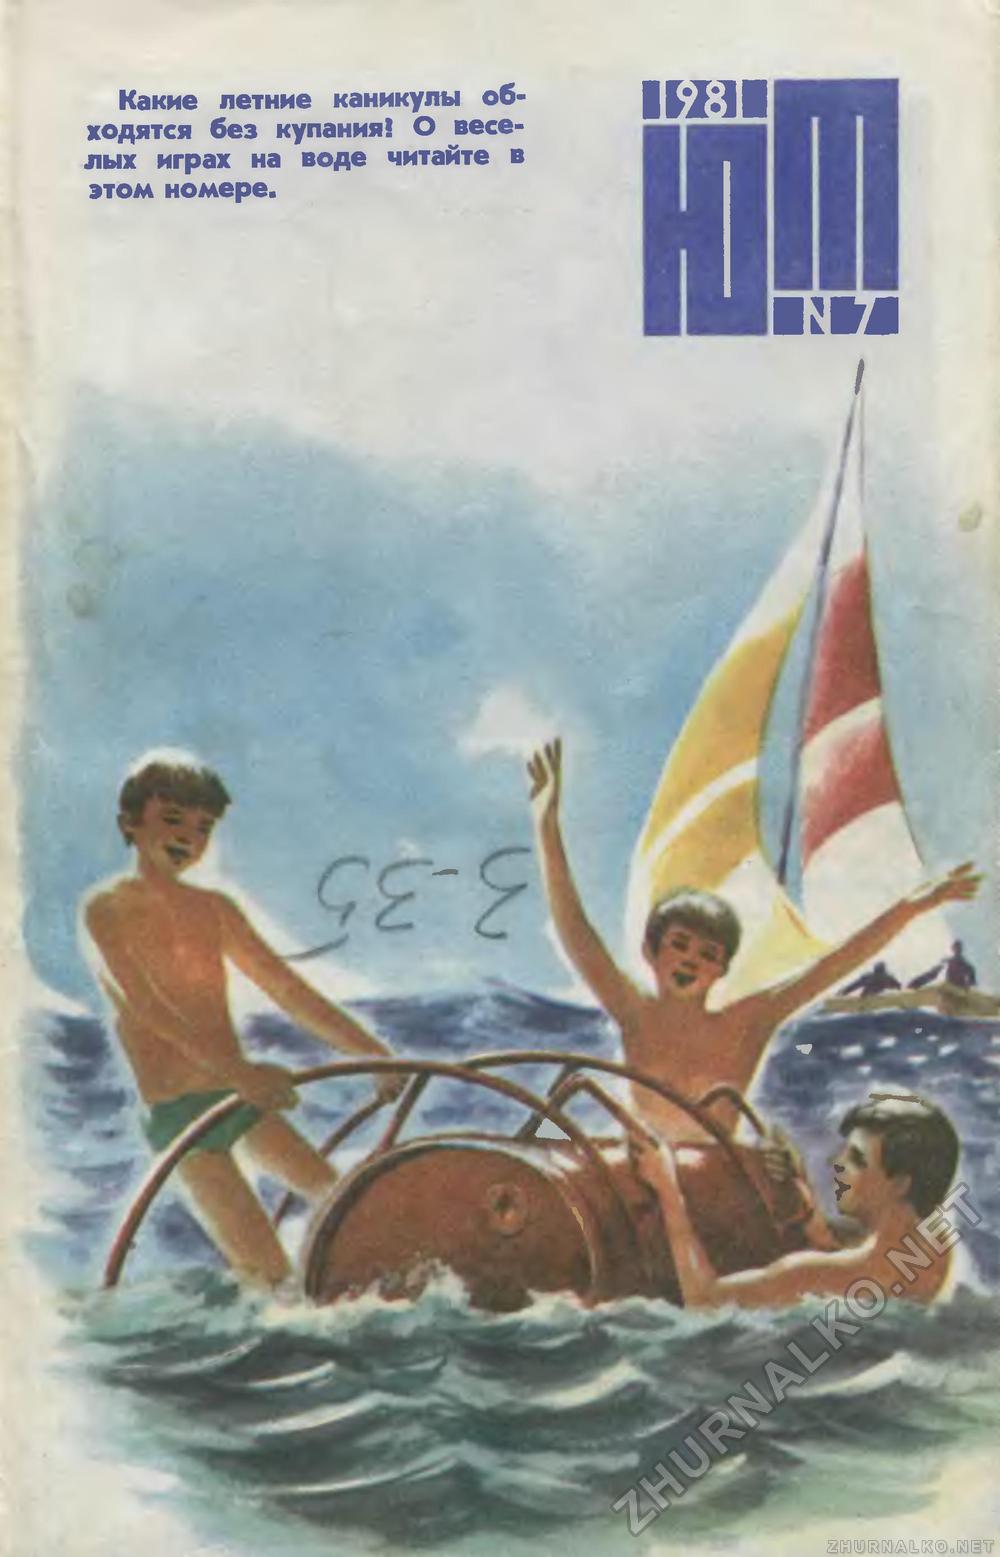   1981-07,  1